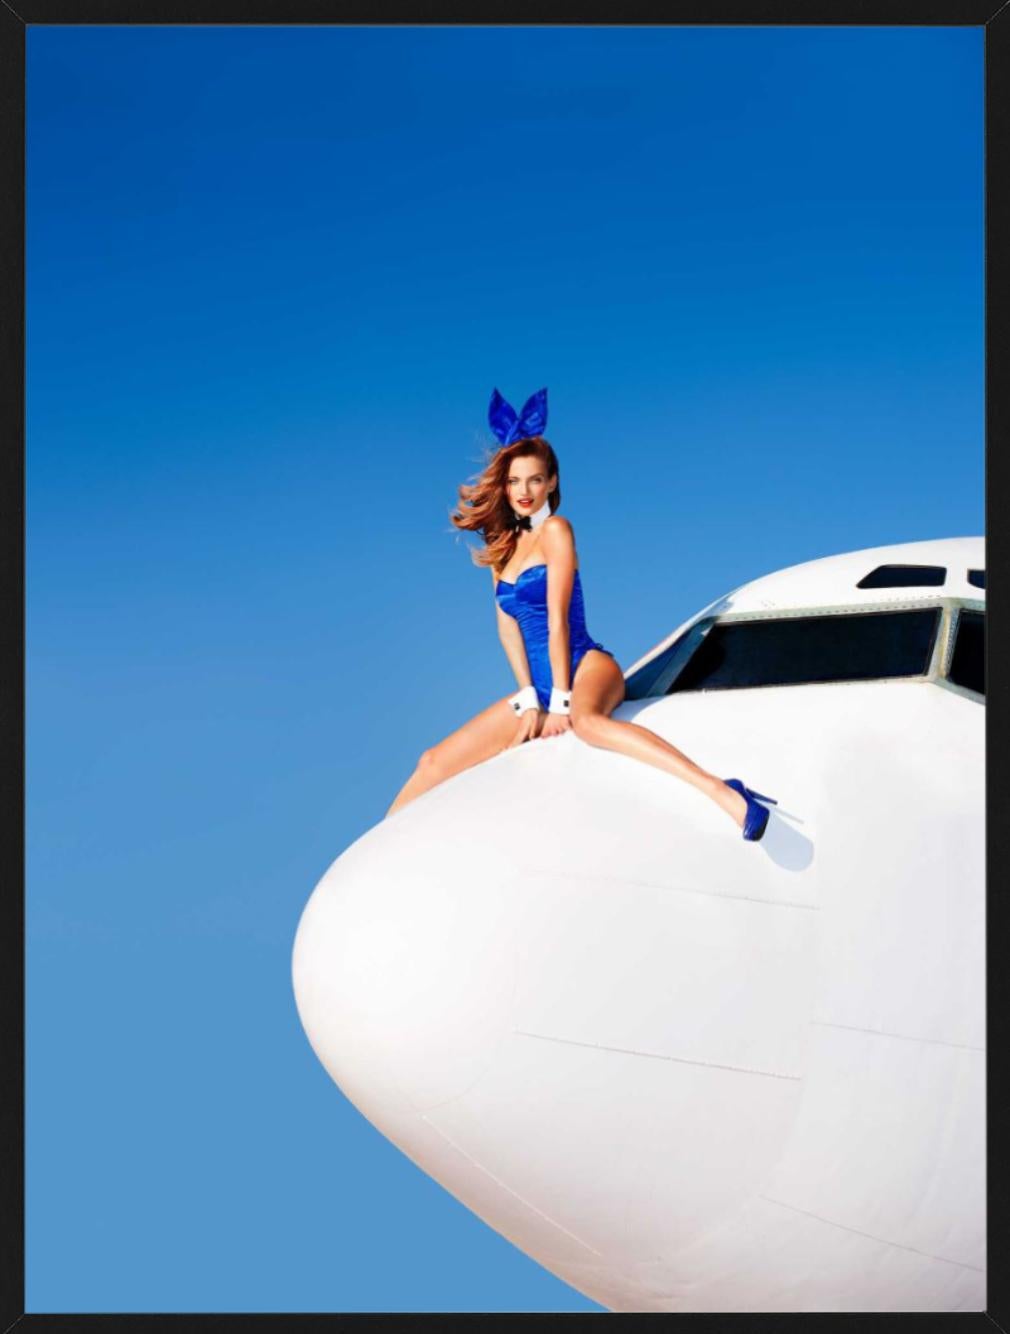 Flight TK75 - Modèle en costume de lapin assis sur un avion, photographie d'art 2014 - Photograph de Tony Kelly